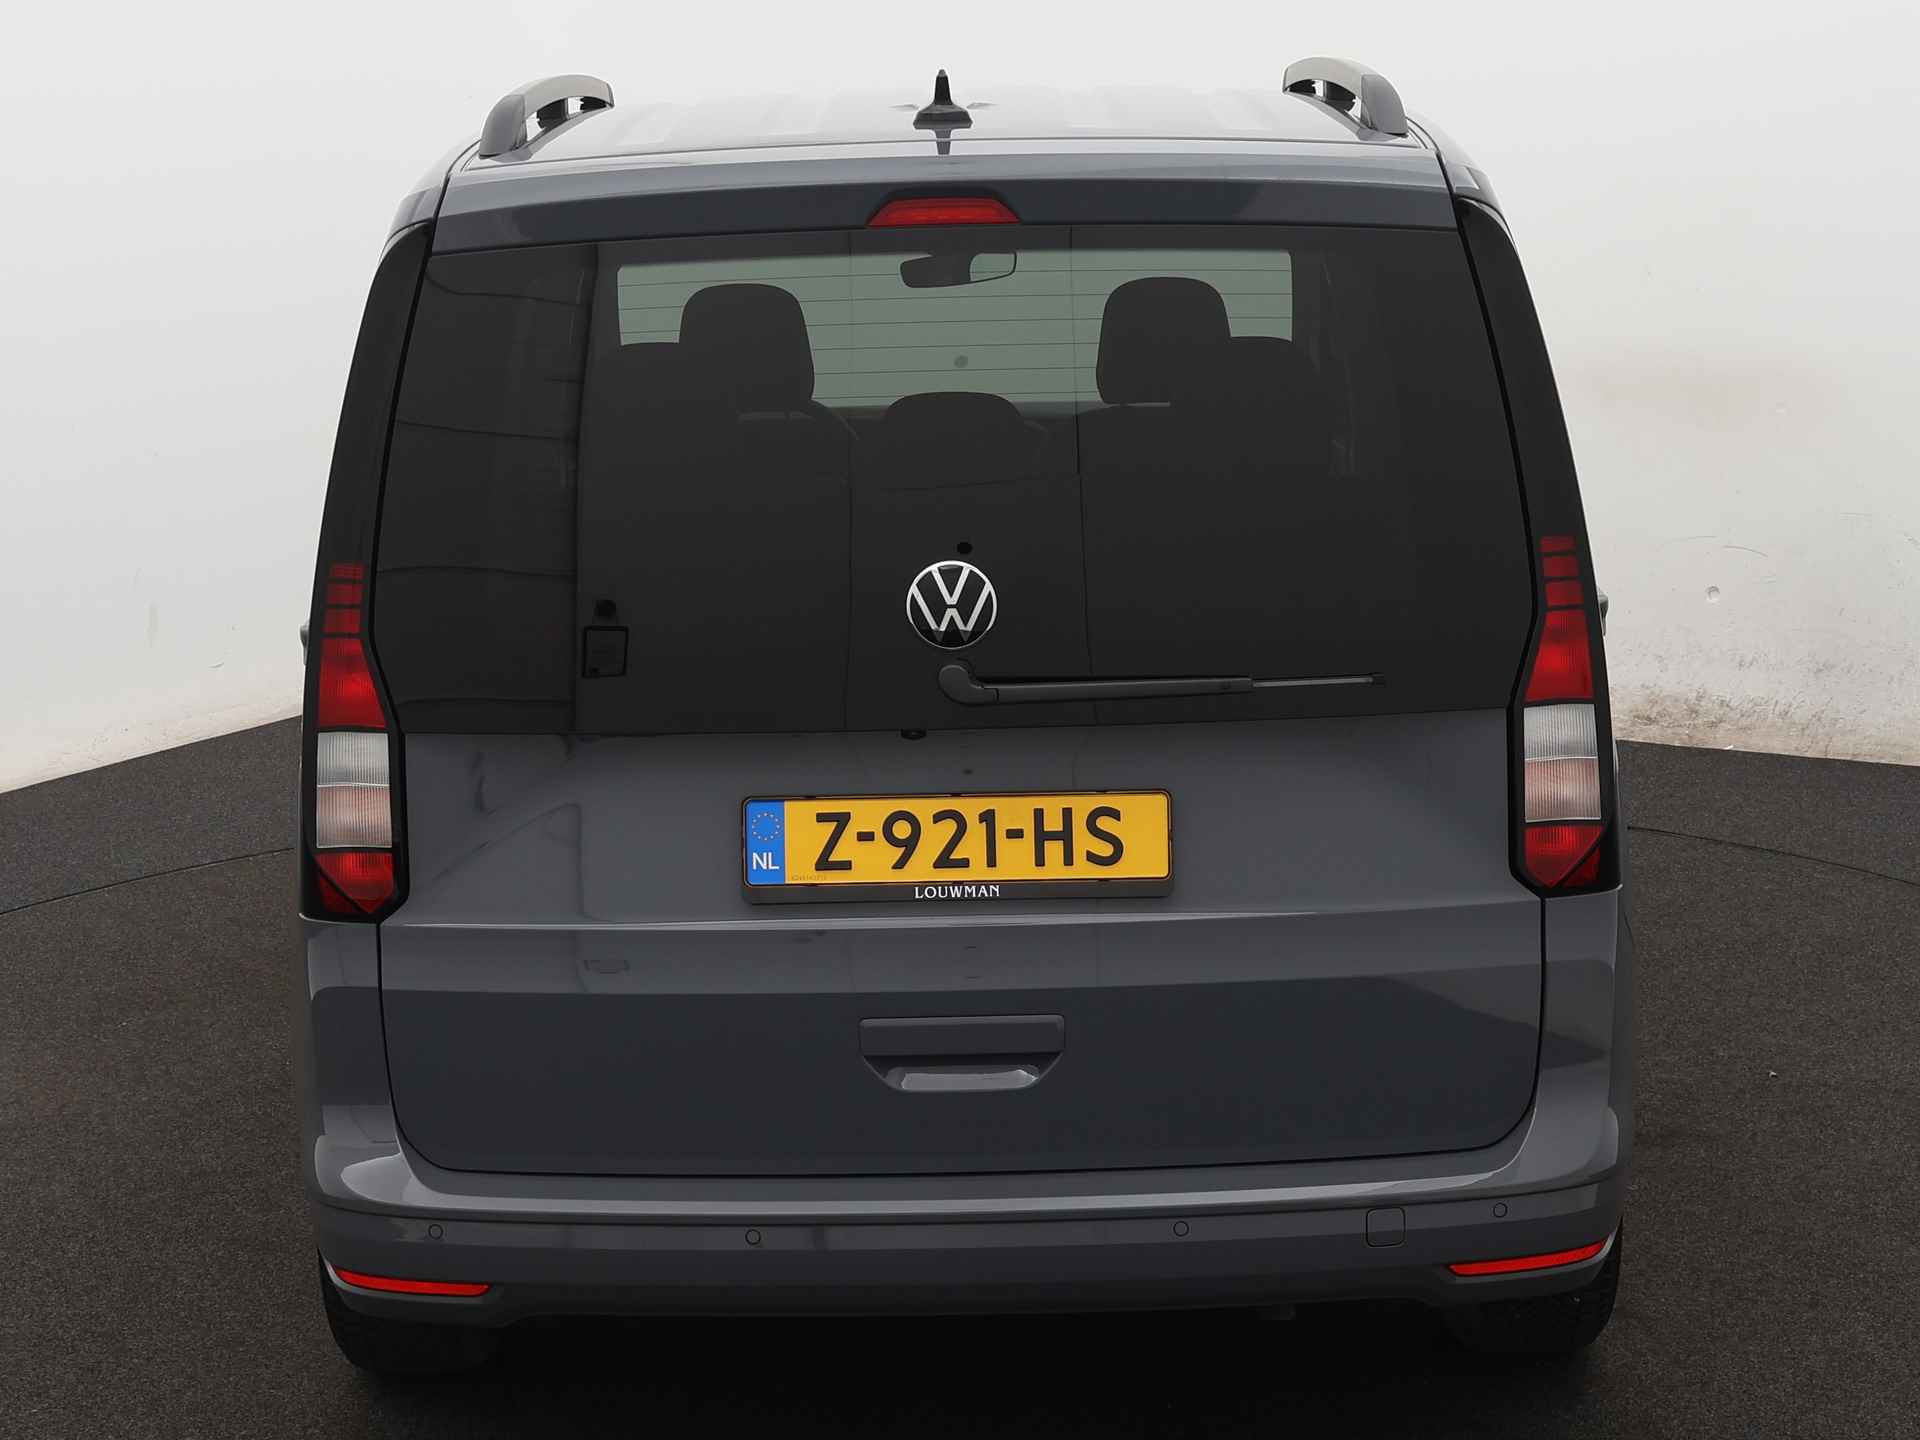 Volkswagen Caddy 1.5 TSI Life Ingepland voor nieuwe bodemverlaging t.b.v. rolstoelvervoer (Prijs incl. bodemverlaging) - 24/36